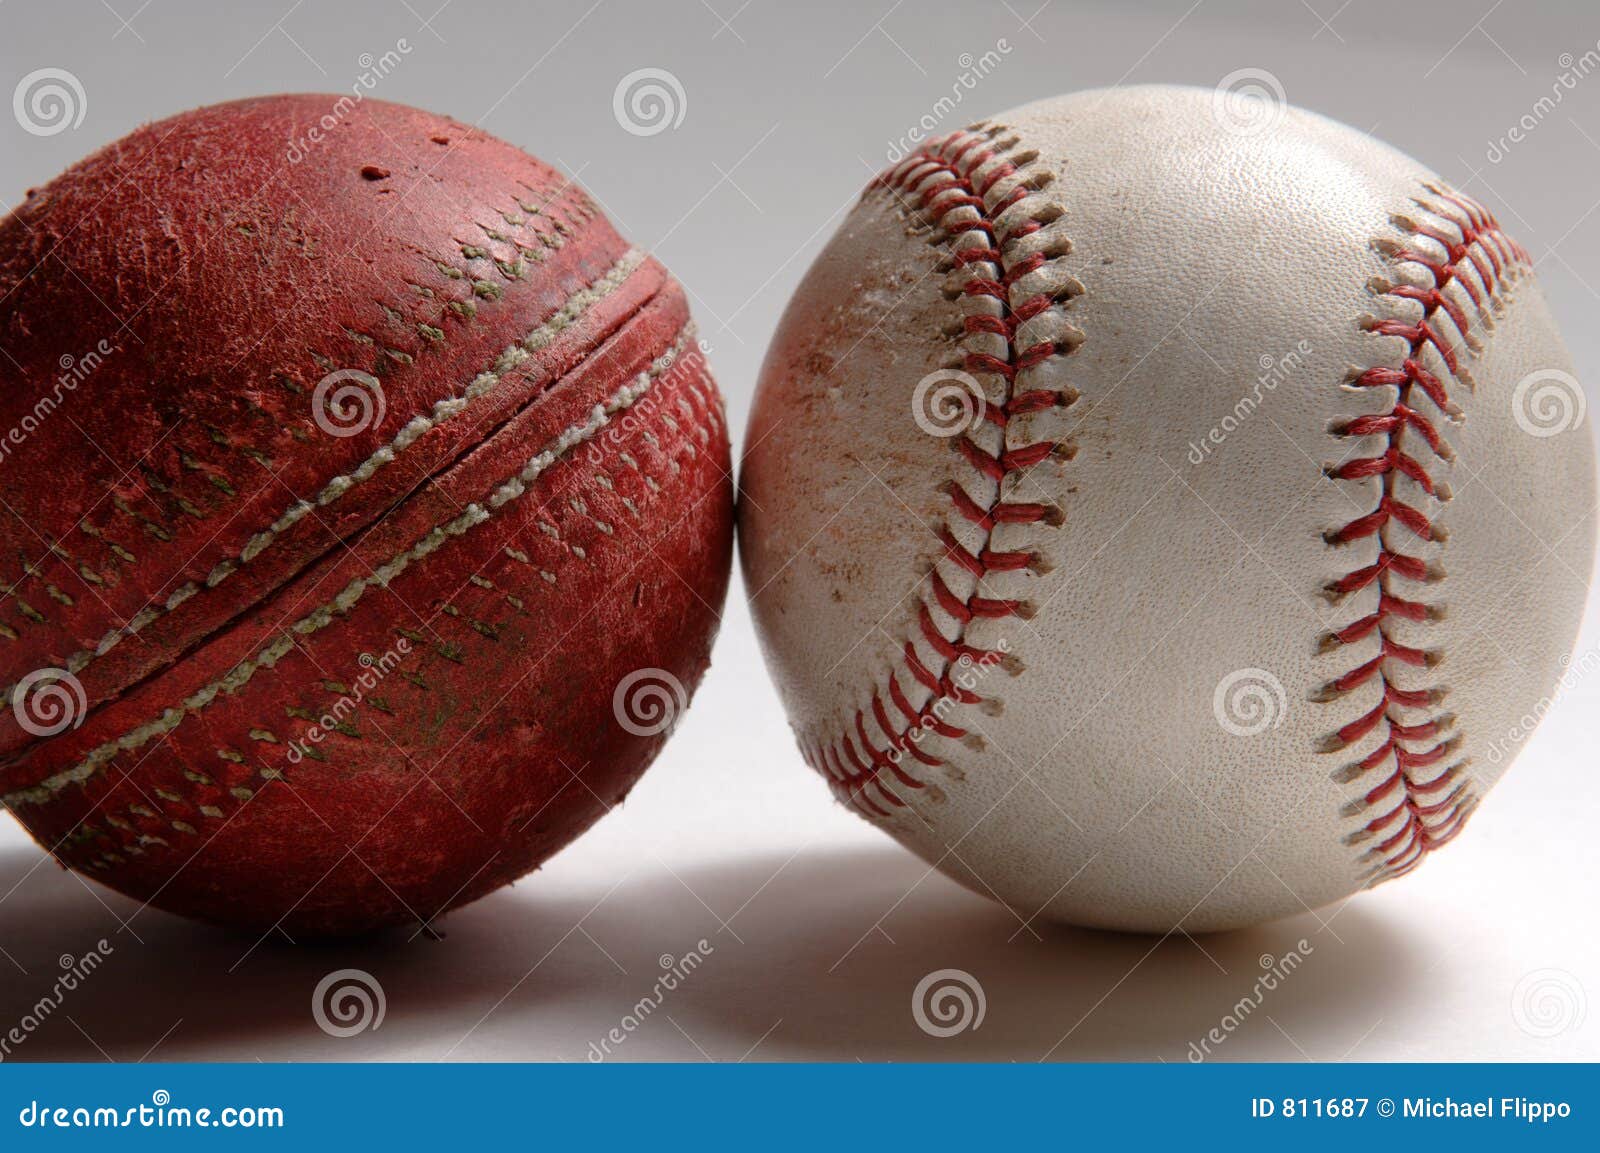 Baseball and cricket